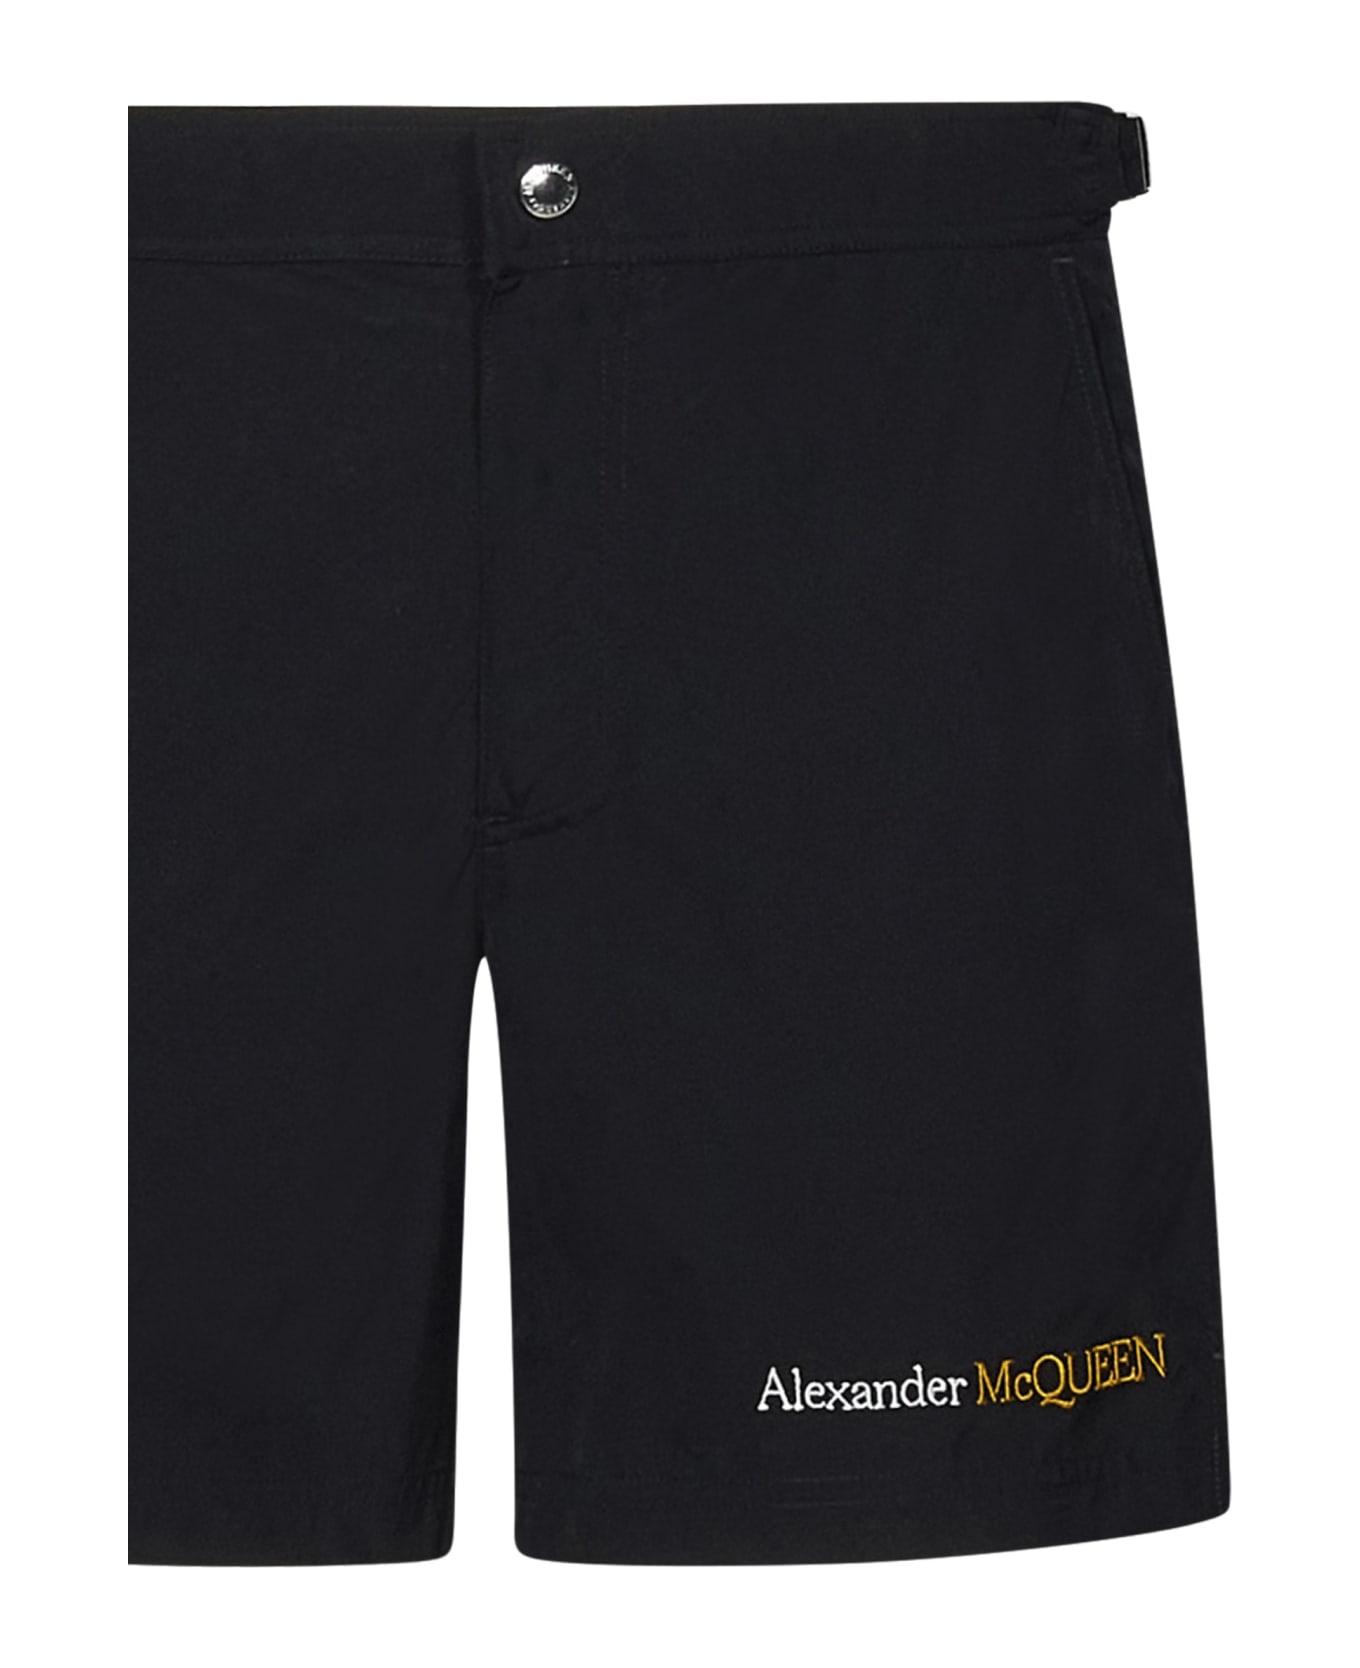 Alexander McQueen Swimsuit - Black